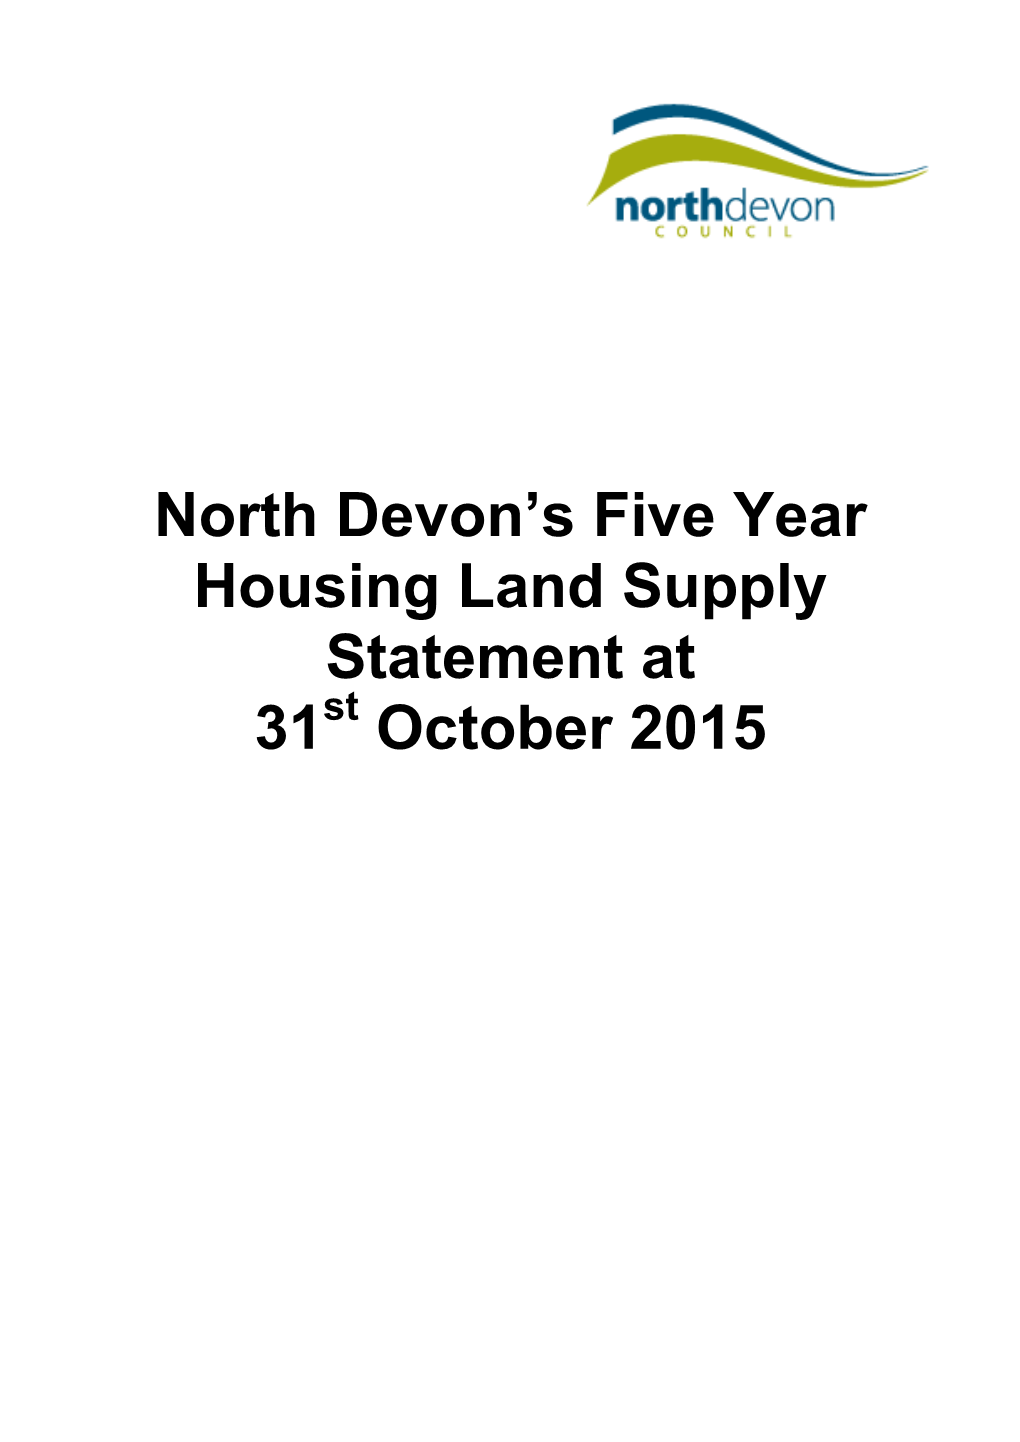 North Devon's Five Year Housing Land Supply Statement at 31